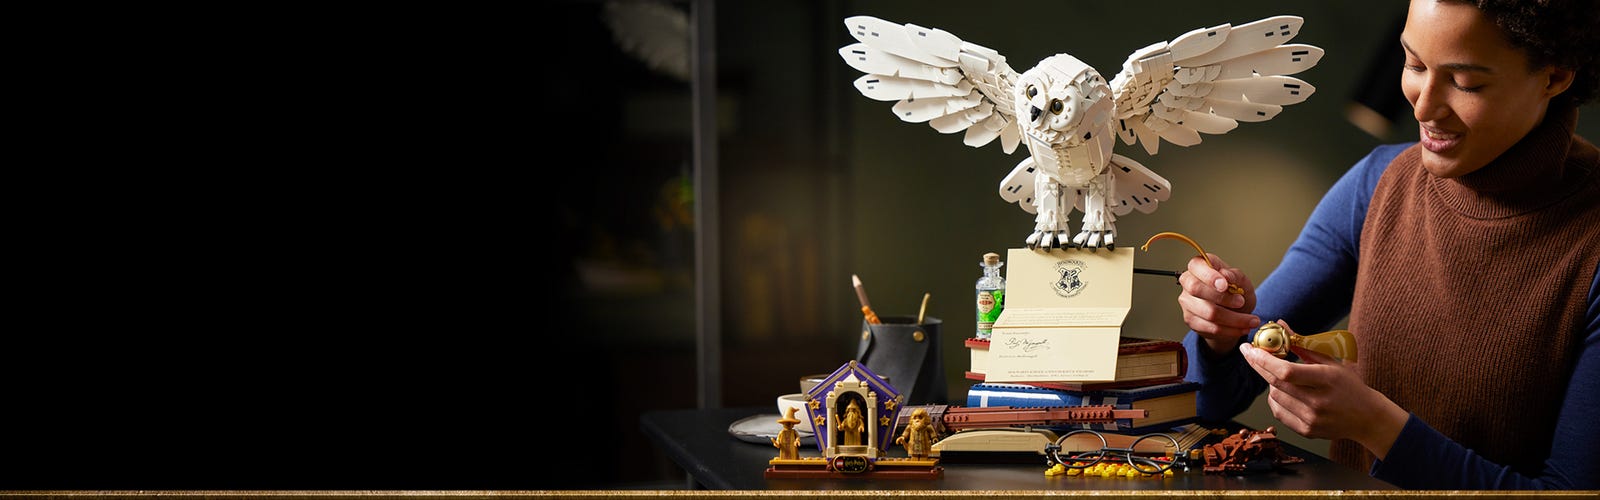 LEGO Harry Potter Les icônes de Poudlard : édition de collection 76391 (3  010 pièces)